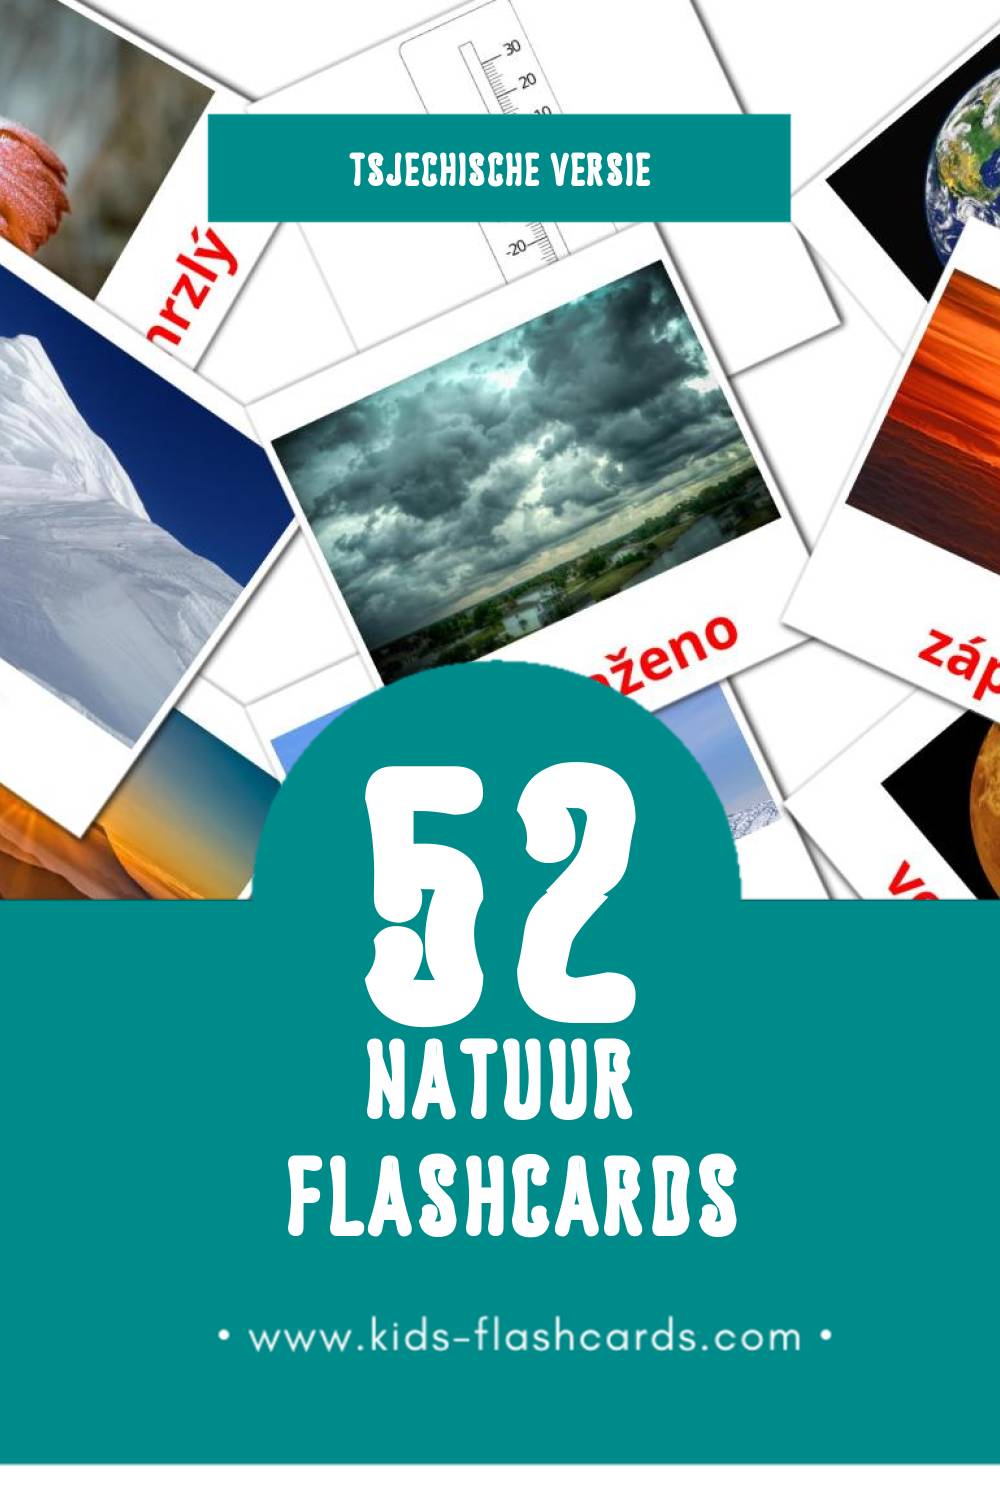 Visuele Příroda Flashcards voor Kleuters (52 kaarten in het Tsjechisch)